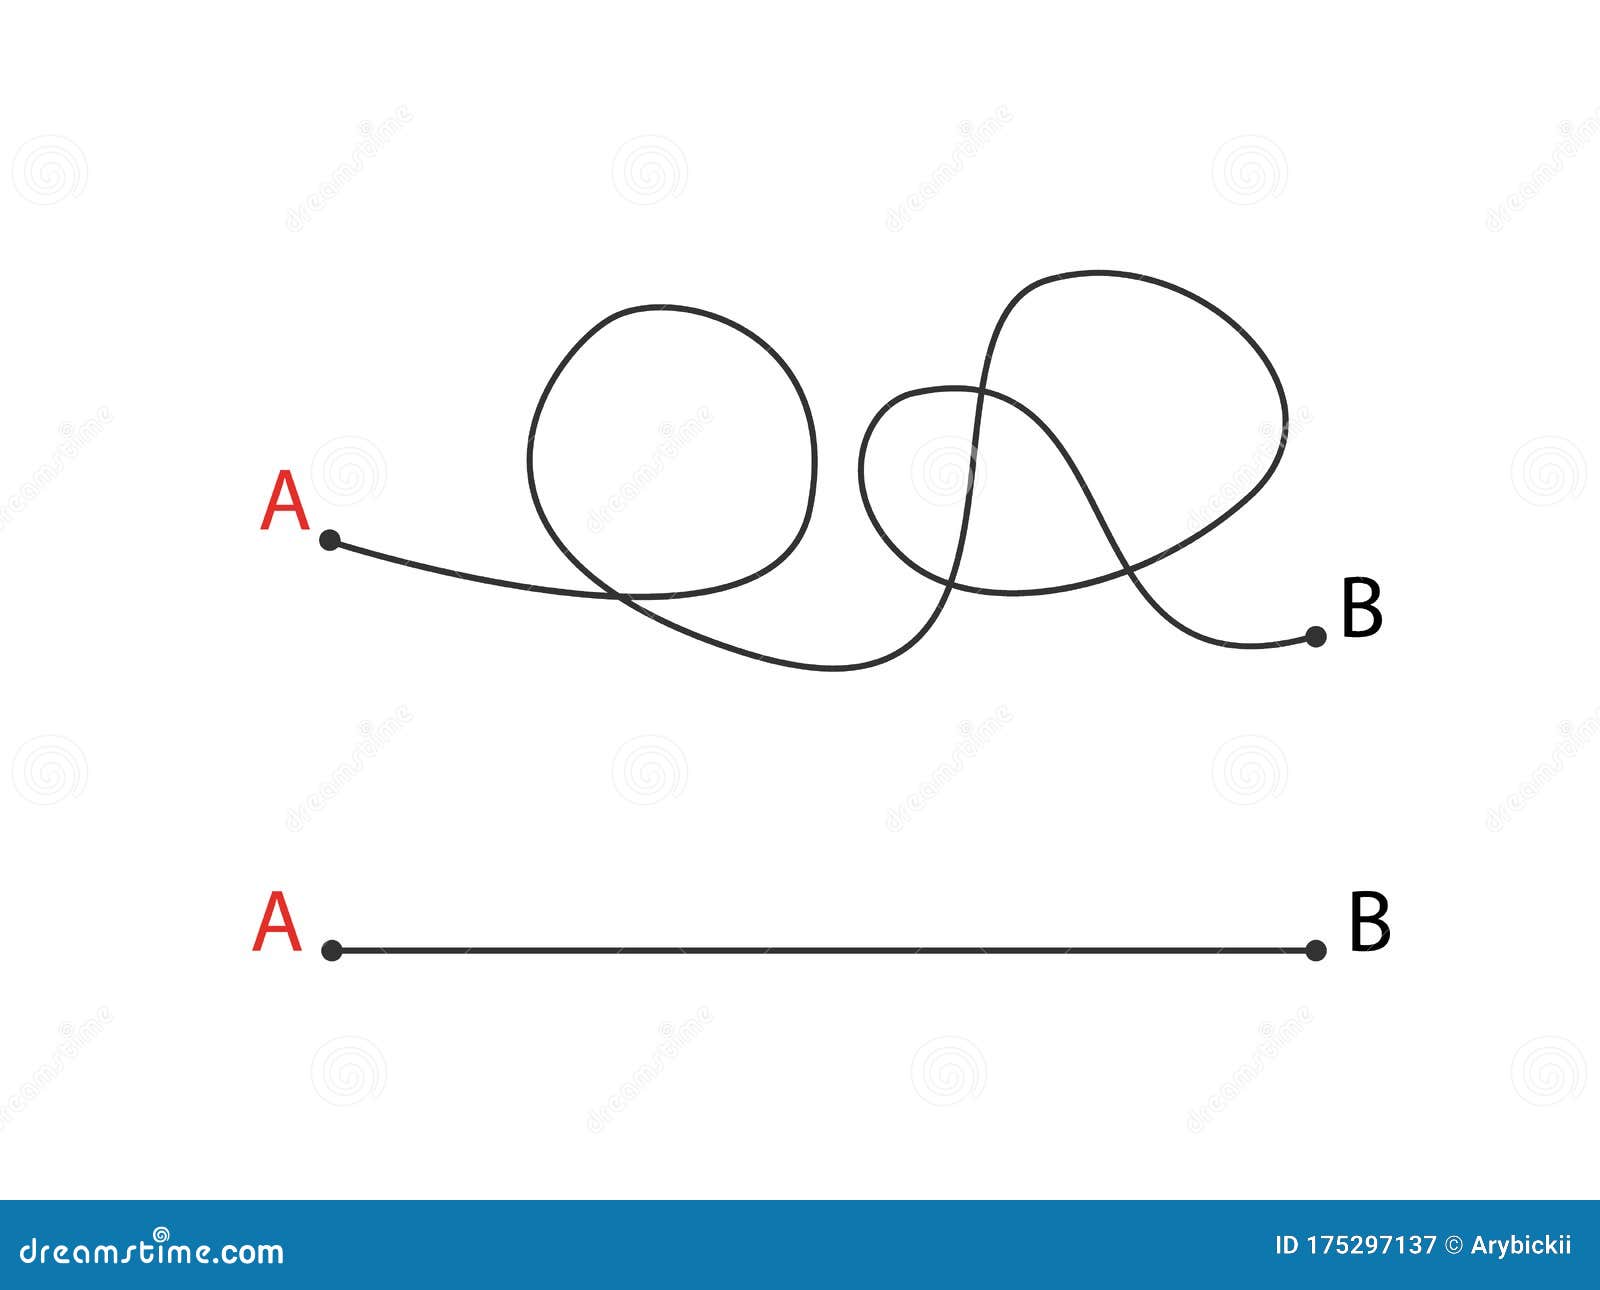 Путь из точки а в точку б картинки. Из точки а в точку б. Небрежный рисунок от точки а к б. Линии выходящие из точки.